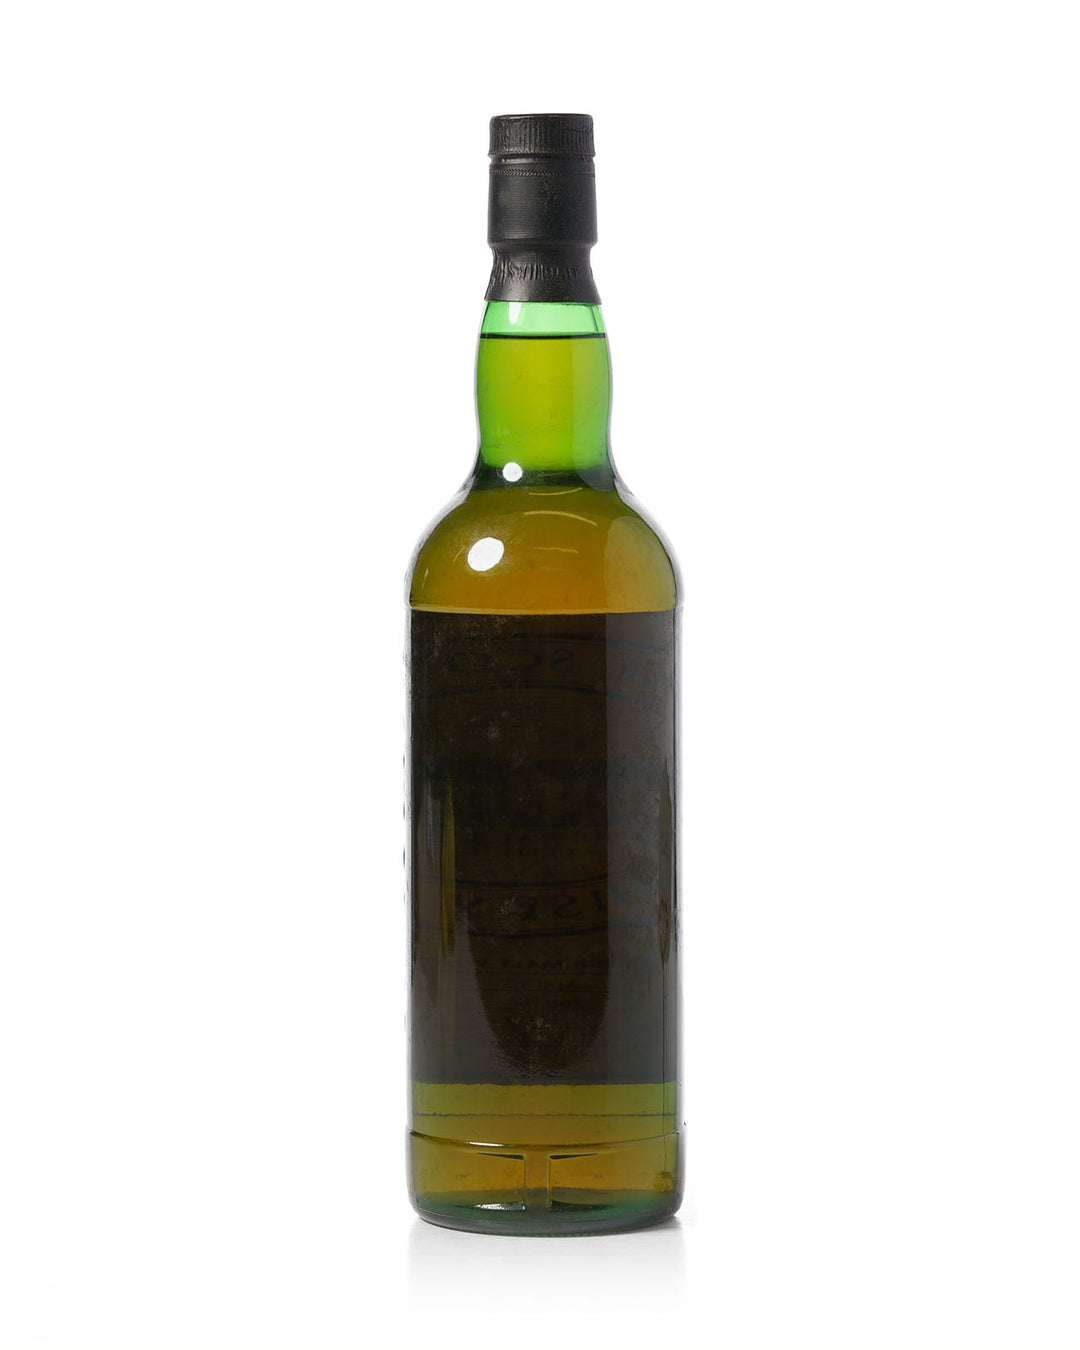 Glenturret 1992 10 Year Old Scotch Malt Whisky Society SMWS 16.26 Bottled 2002